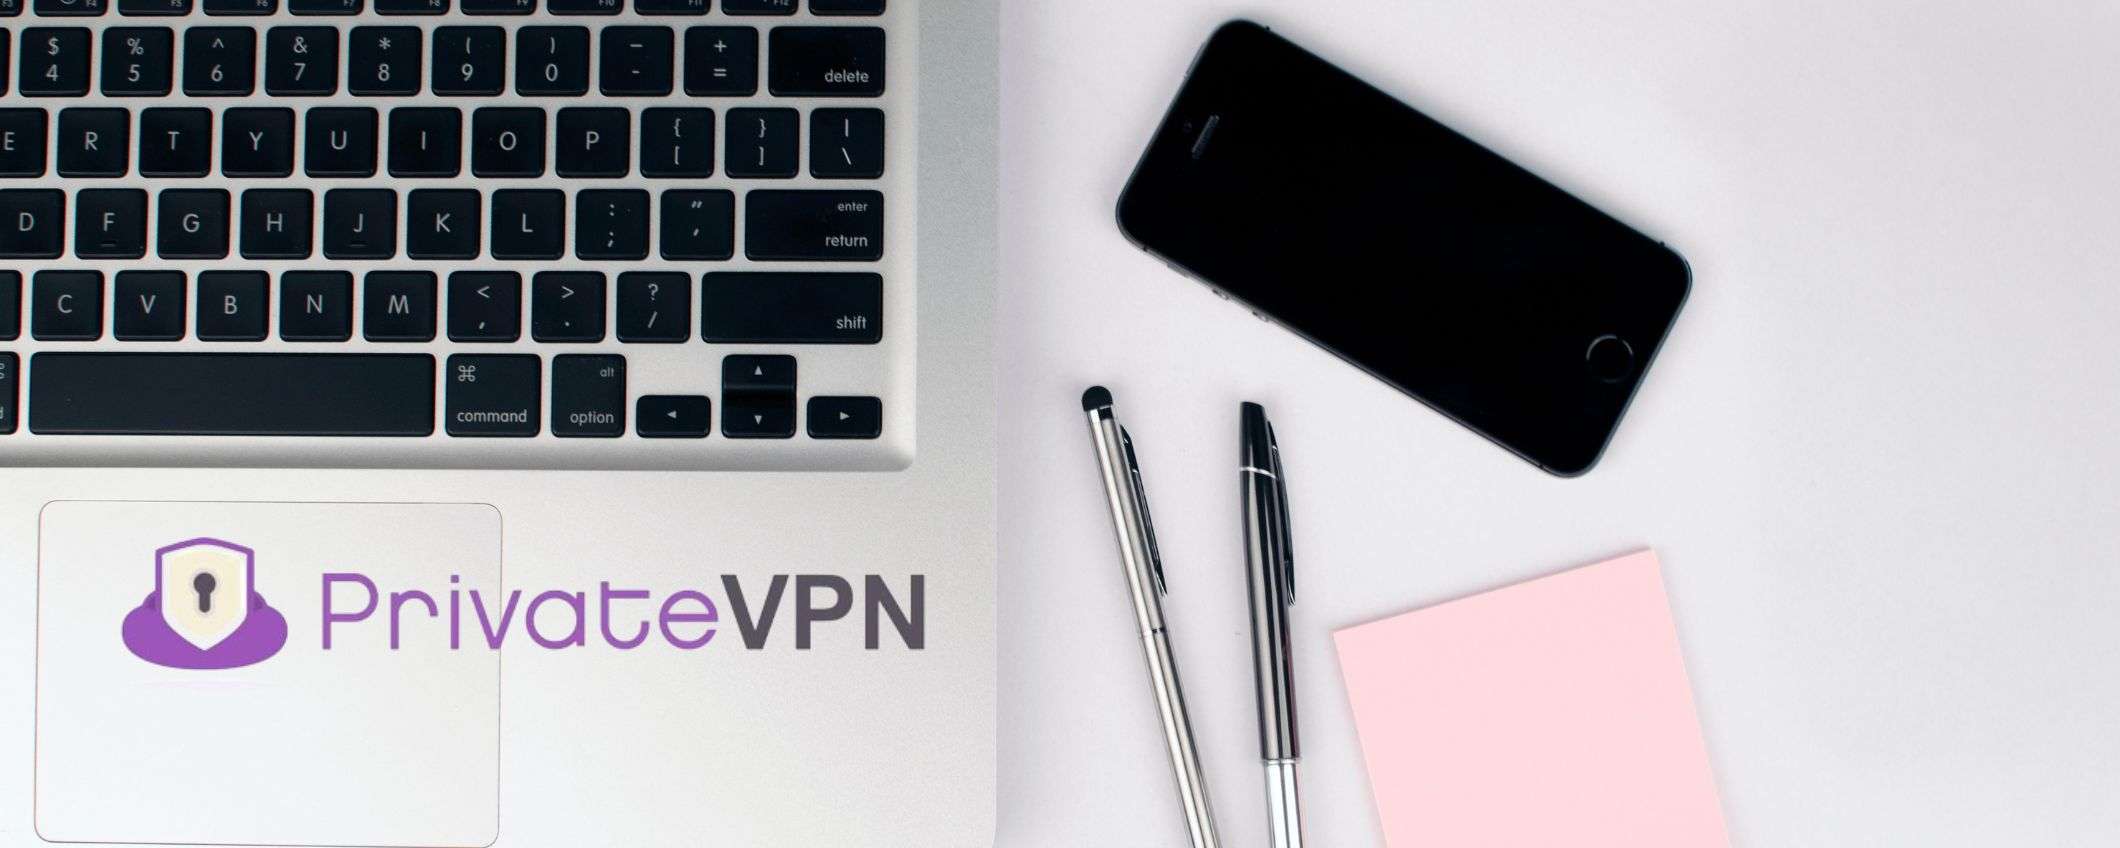 PrivateVPN: connessione più sicura e rapida a soli 2,08€/mese